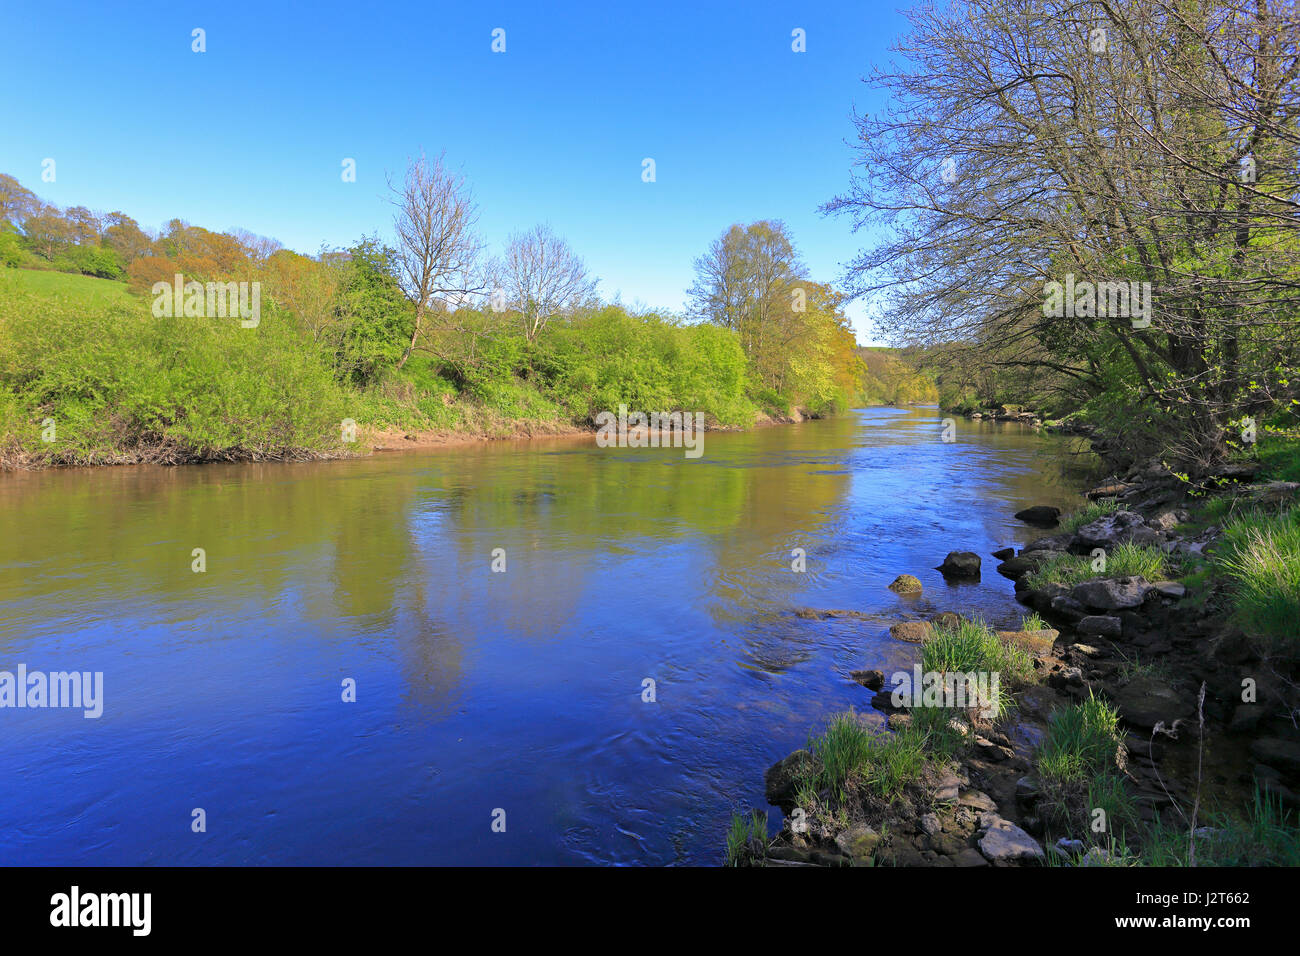 L'eau Stanley trajet sur la rivière Severn, un des plus prolifiques pour l'huile de pêche barbillon, Shropshire, England, UK. Banque D'Images